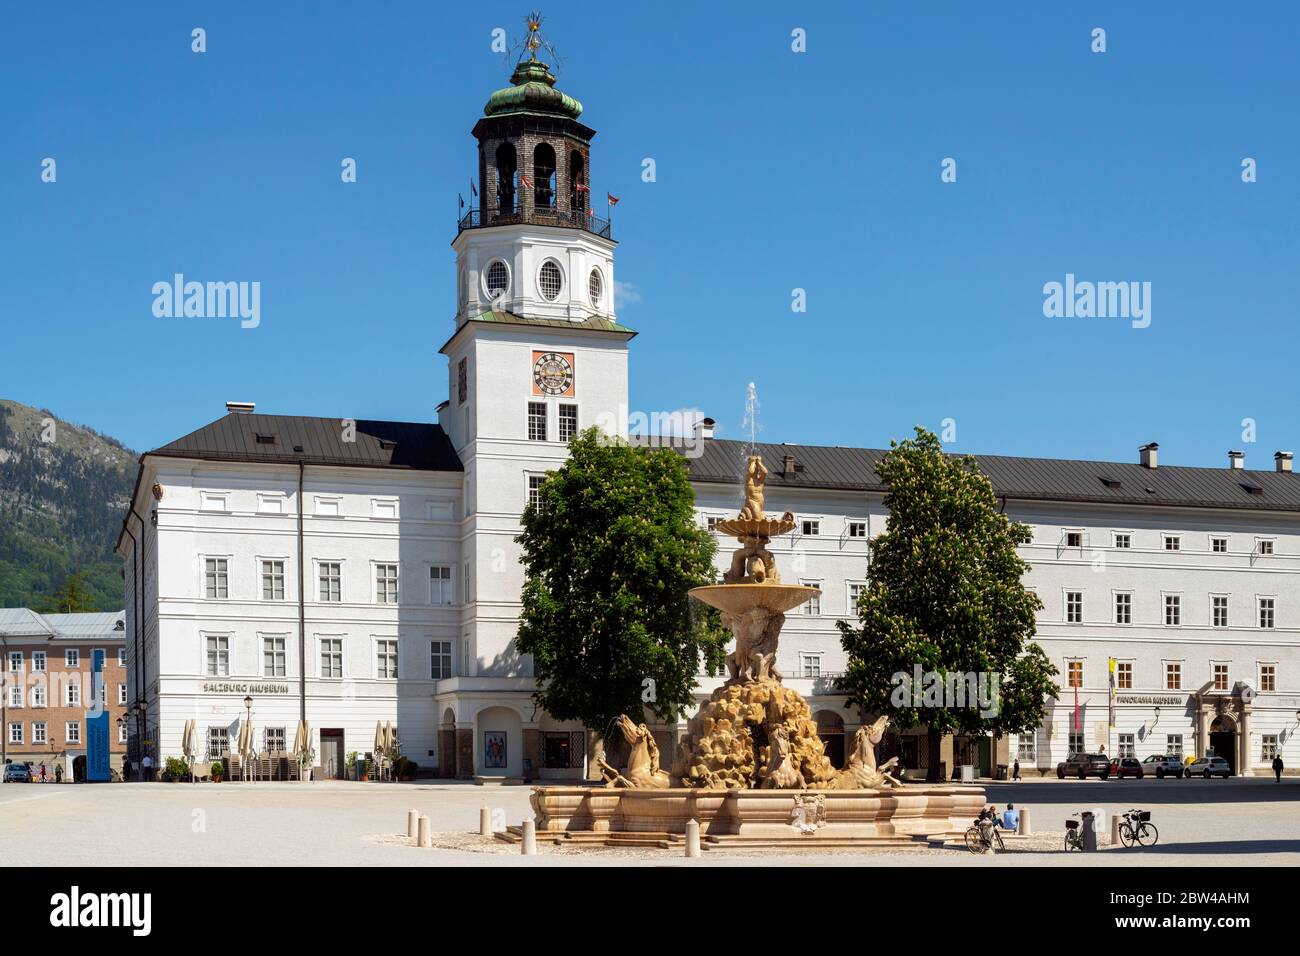 Österreich, Stadt Salzburg, Residenzplatz mit Residenzbrunnen, ein aus Untersberger Marmor, einem Kalkstein, gehauener monumentaler Brunnen. Er ist de Stock Photo